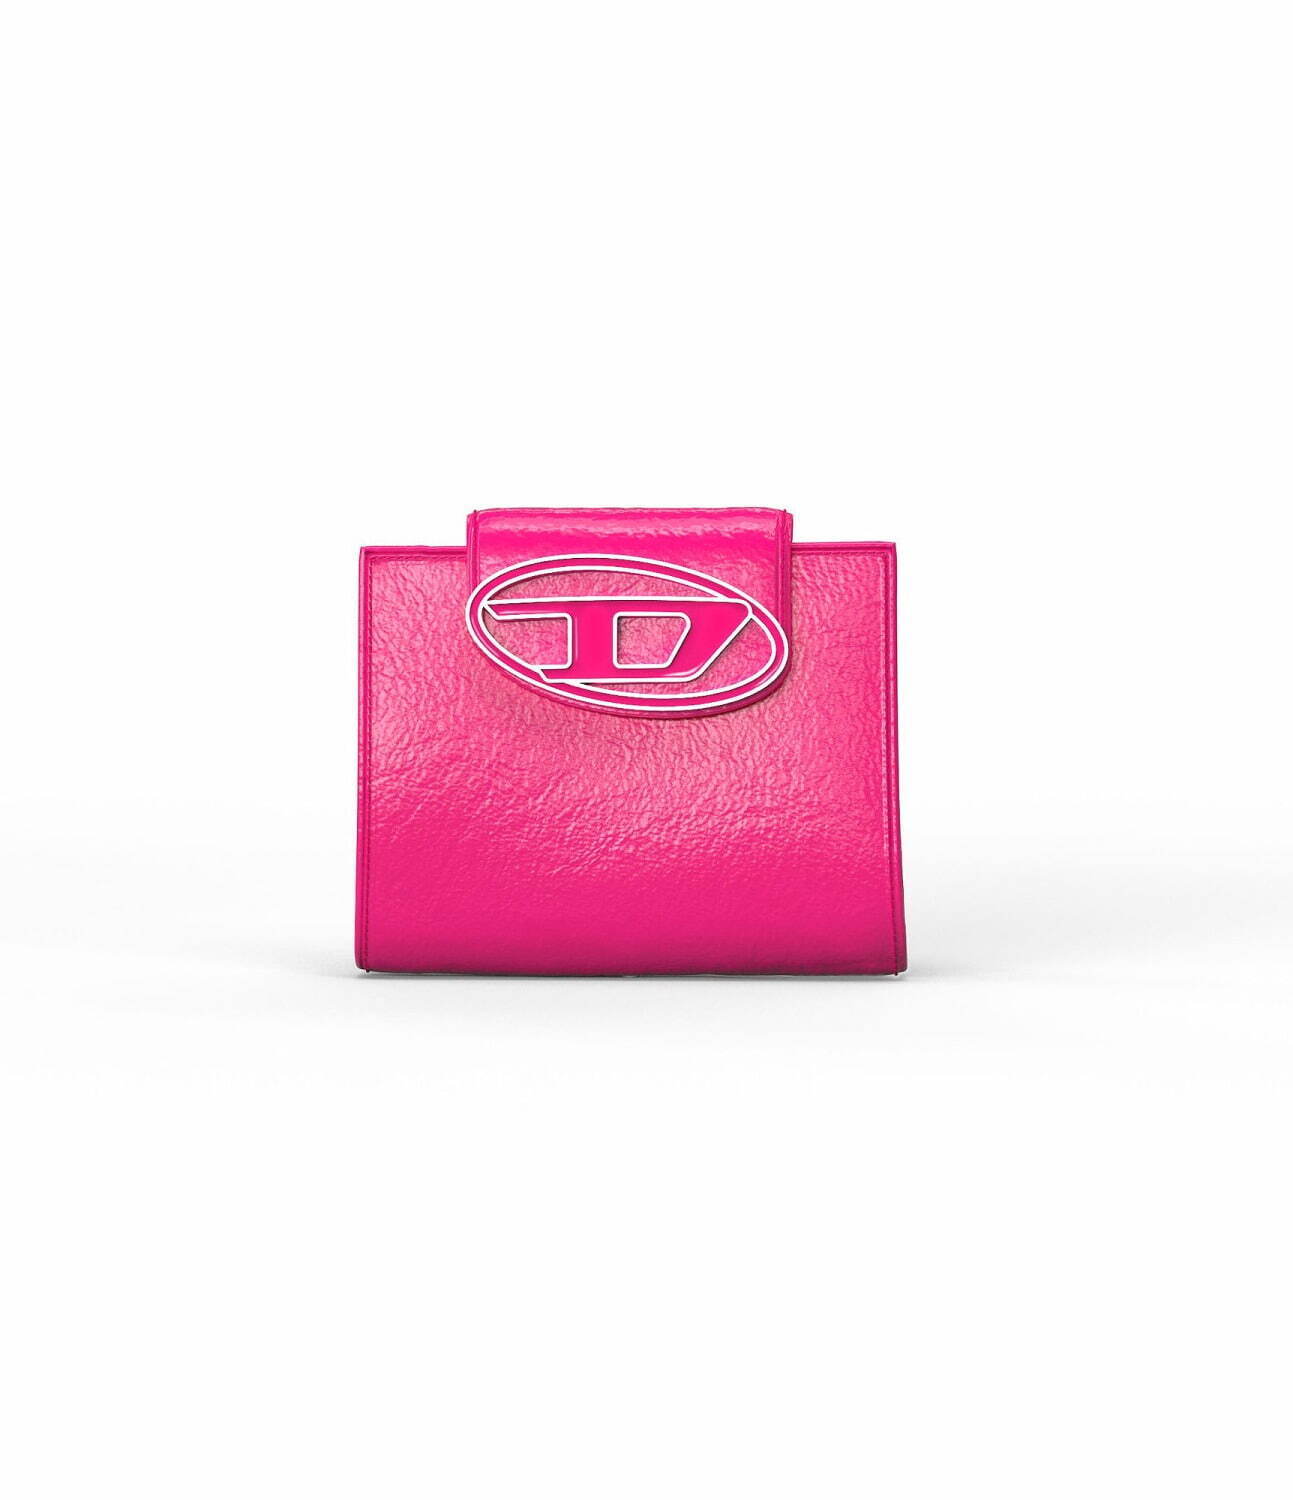 ディーゼル新作財布「ワンダーカミール」、“D ロゴ”×ネオンカラーの